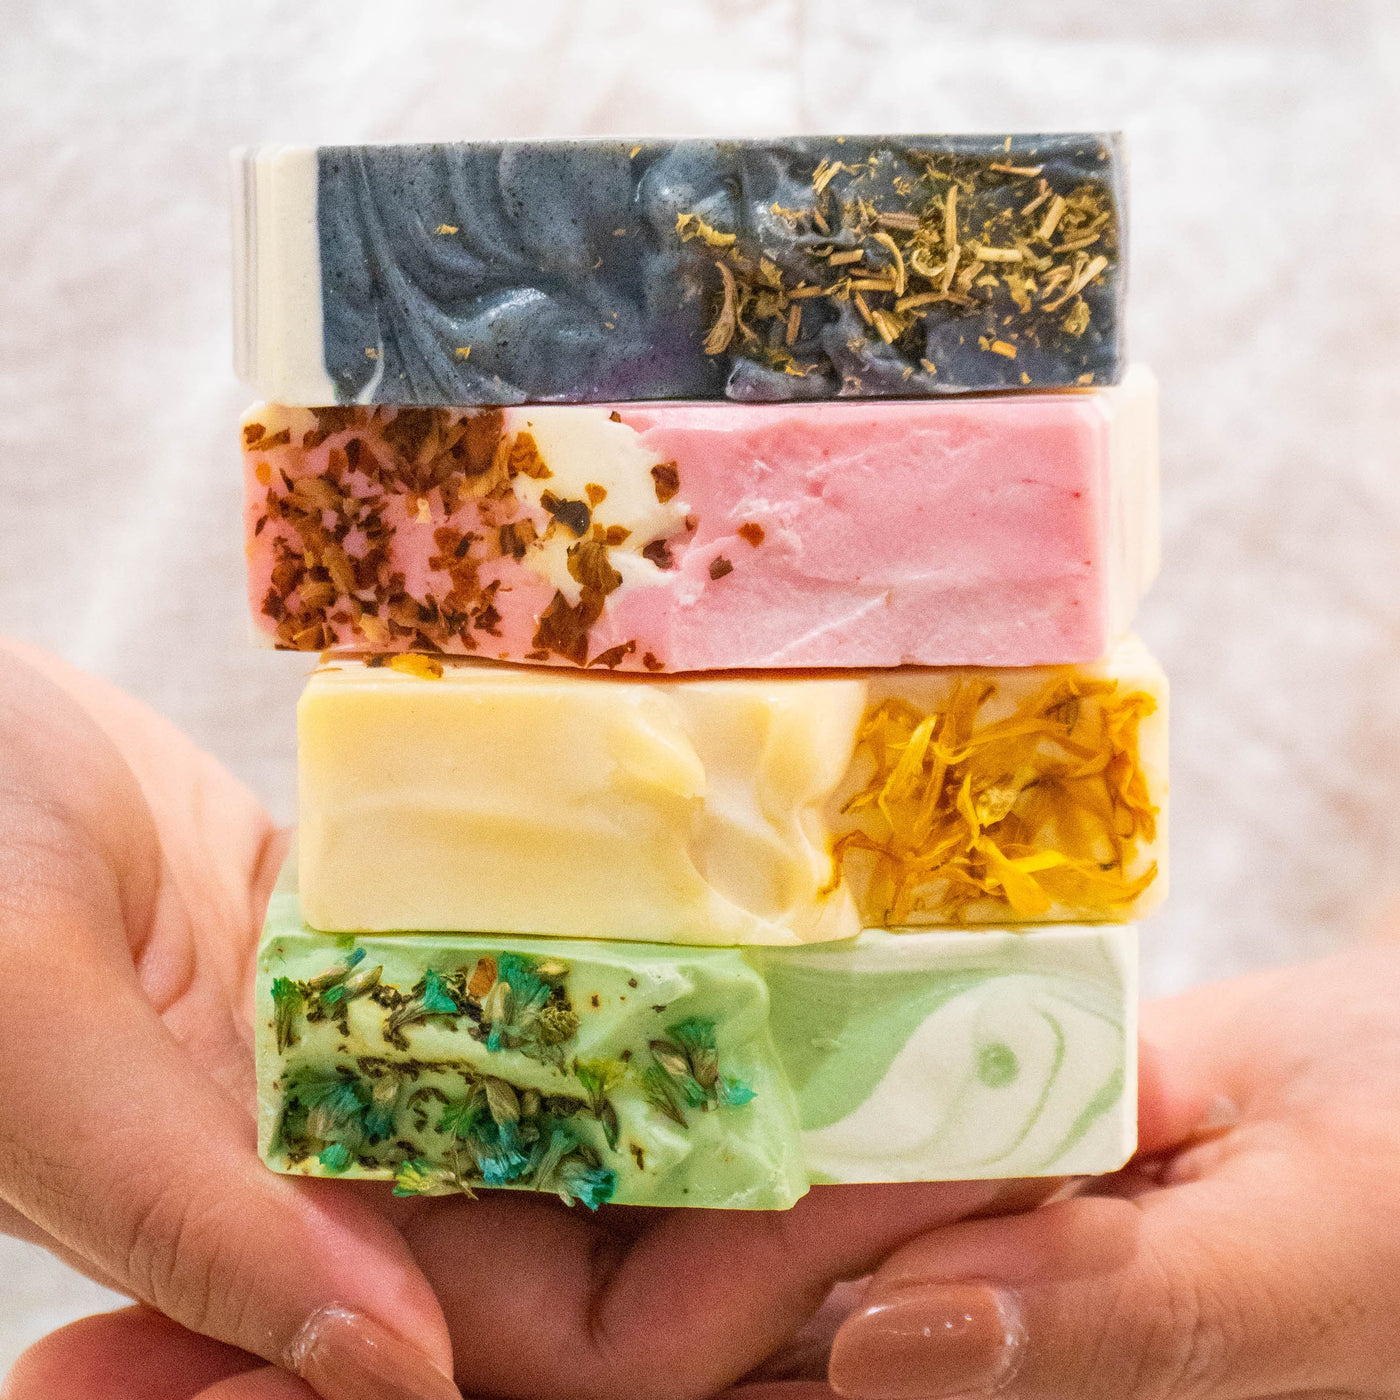 Natural Artisan Bar Soap Set